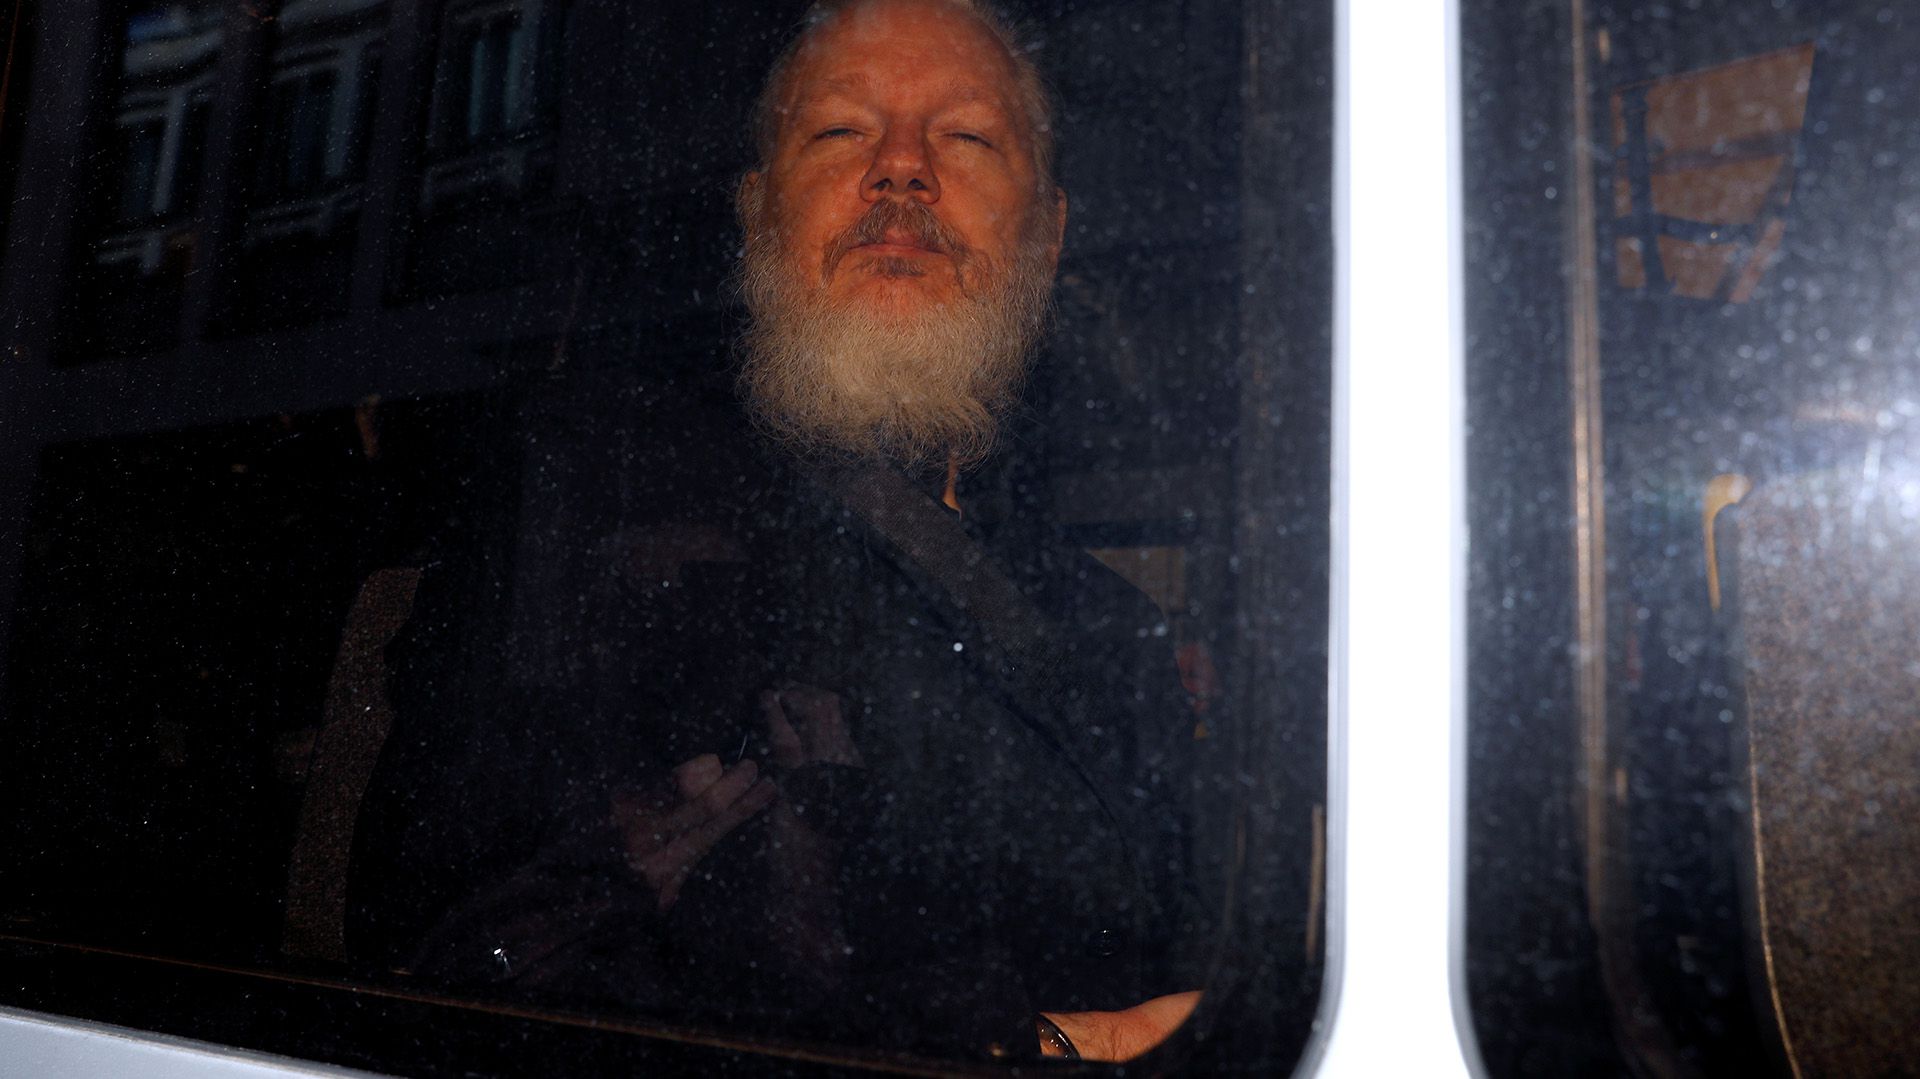 El fundador de WikiLeaks, Julian Assange, en las afueras de Westminster Magistrates Court en Londres, Gran Bretaña, tras ser detenido por la policía británica el 11 de abril de 2019. (Reuters)